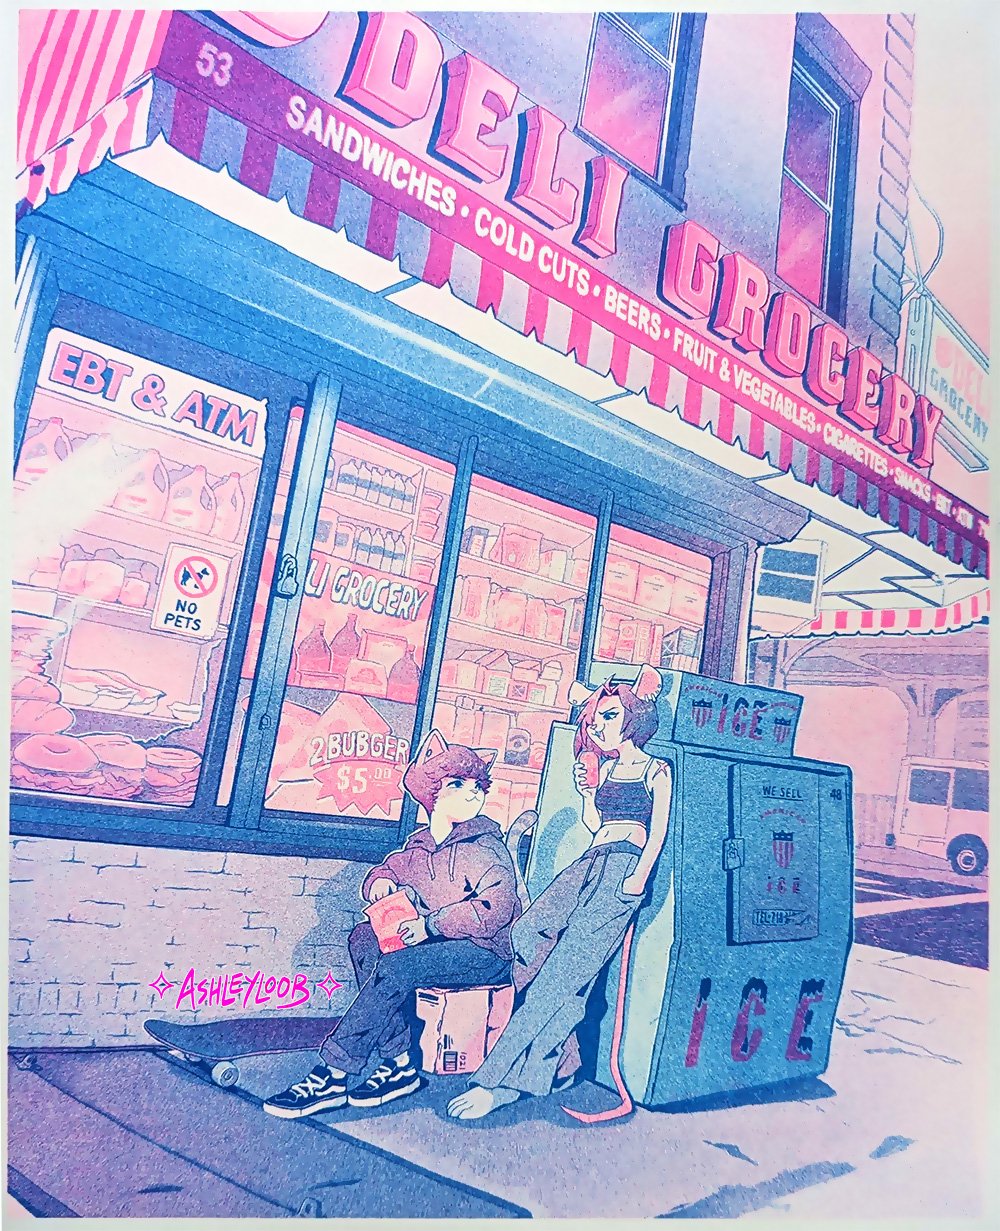 [limited run!] Deli Grocery 2 color risograph print